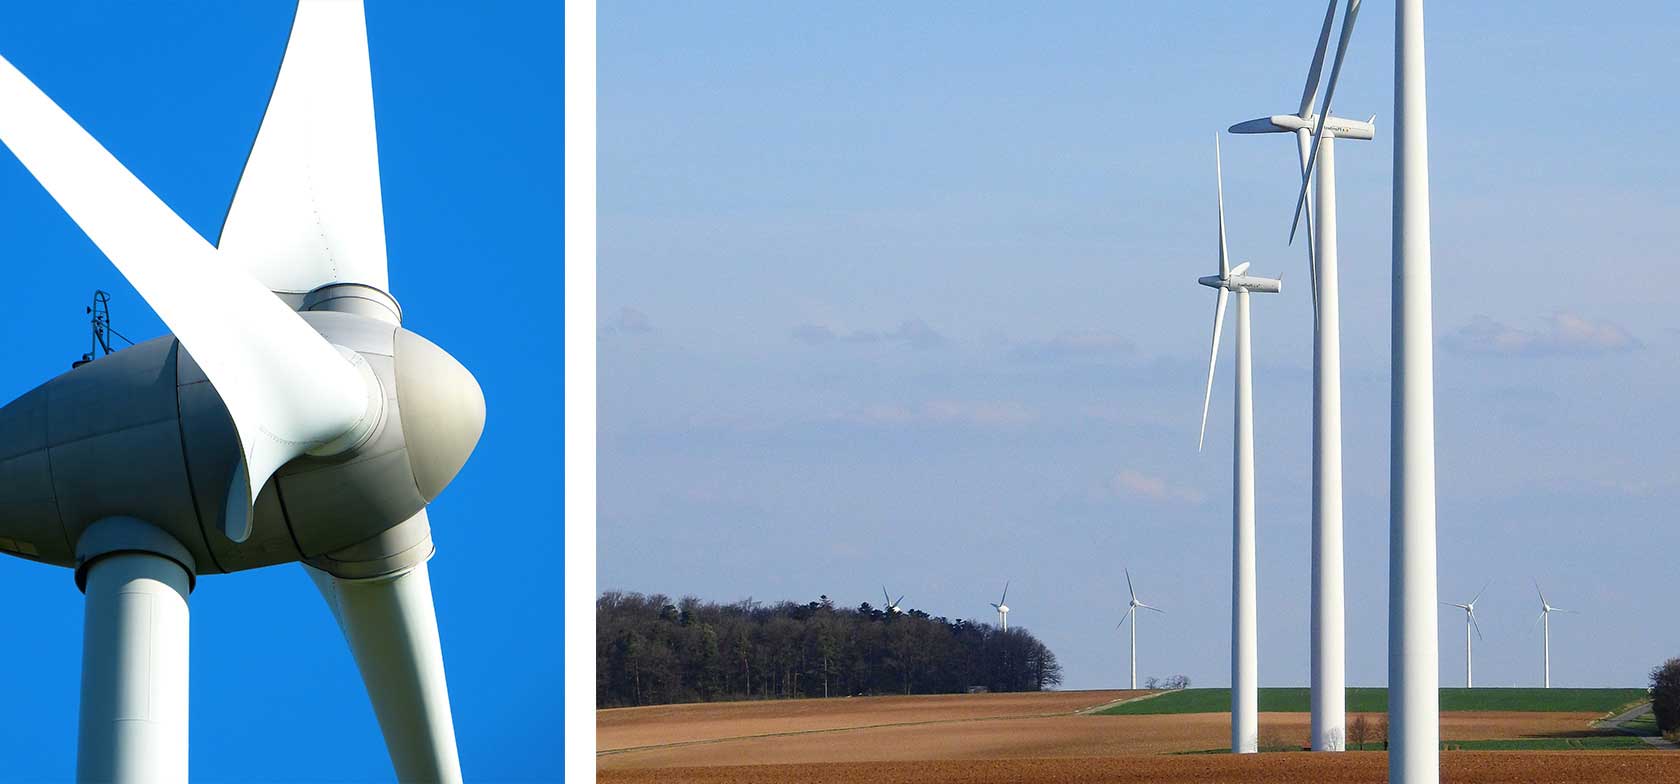 Wind turbines in a large field